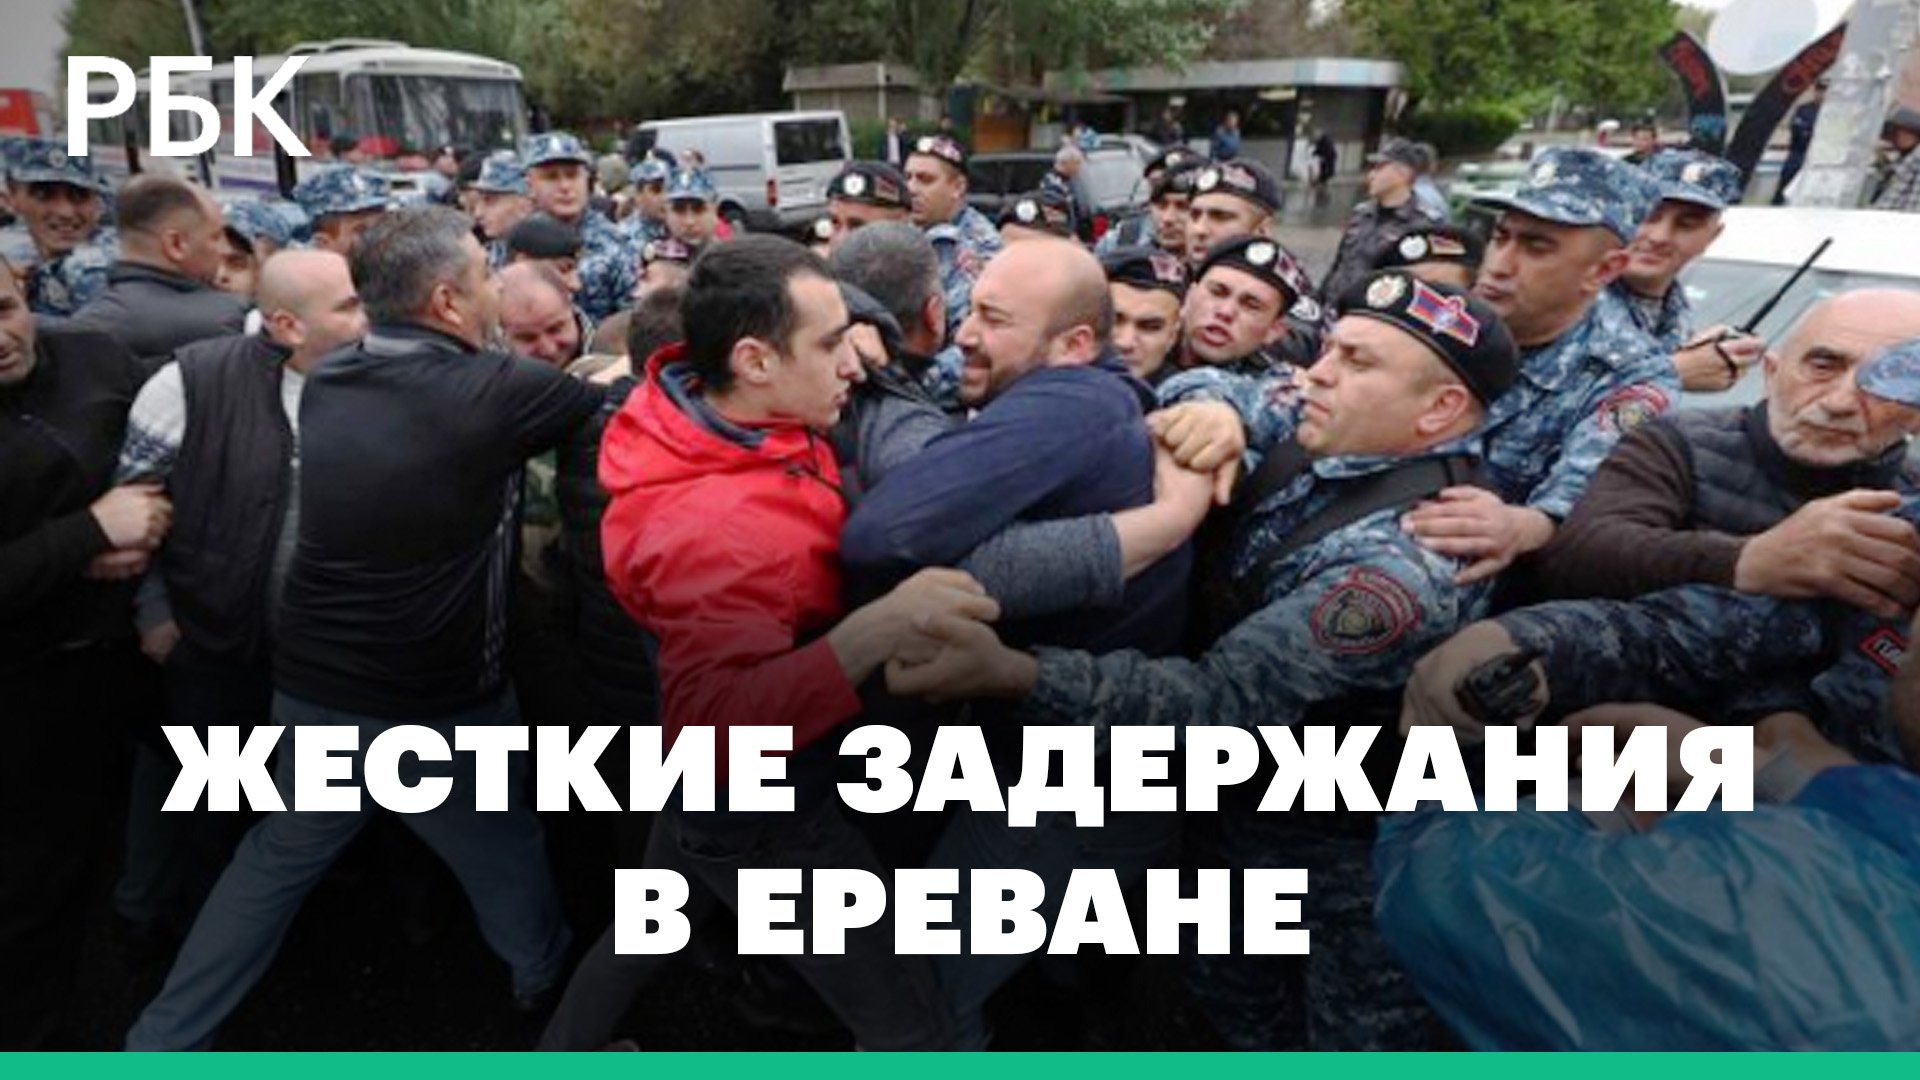 Активисты, требующие отставки Пашиняна, подрались с полицией и прорвали оцепление. Видео